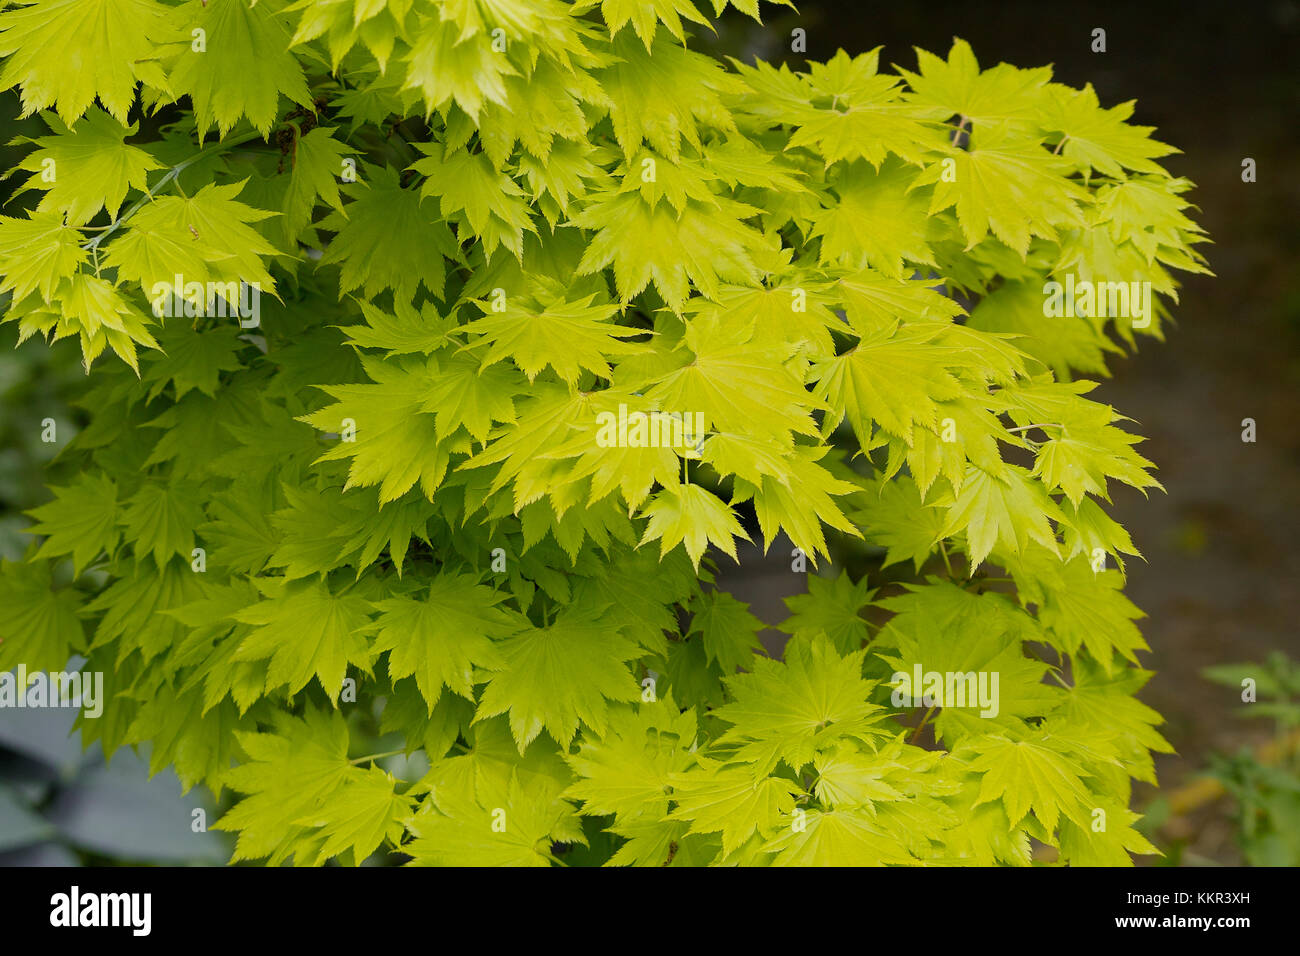 Vert Jaune feuilles d'un arbuste appelé le golden Shirasawa aussi la pleine lune d'érable d'or Maple (Acer shirasawanum Aureum syn. japonicum) Banque D'Images